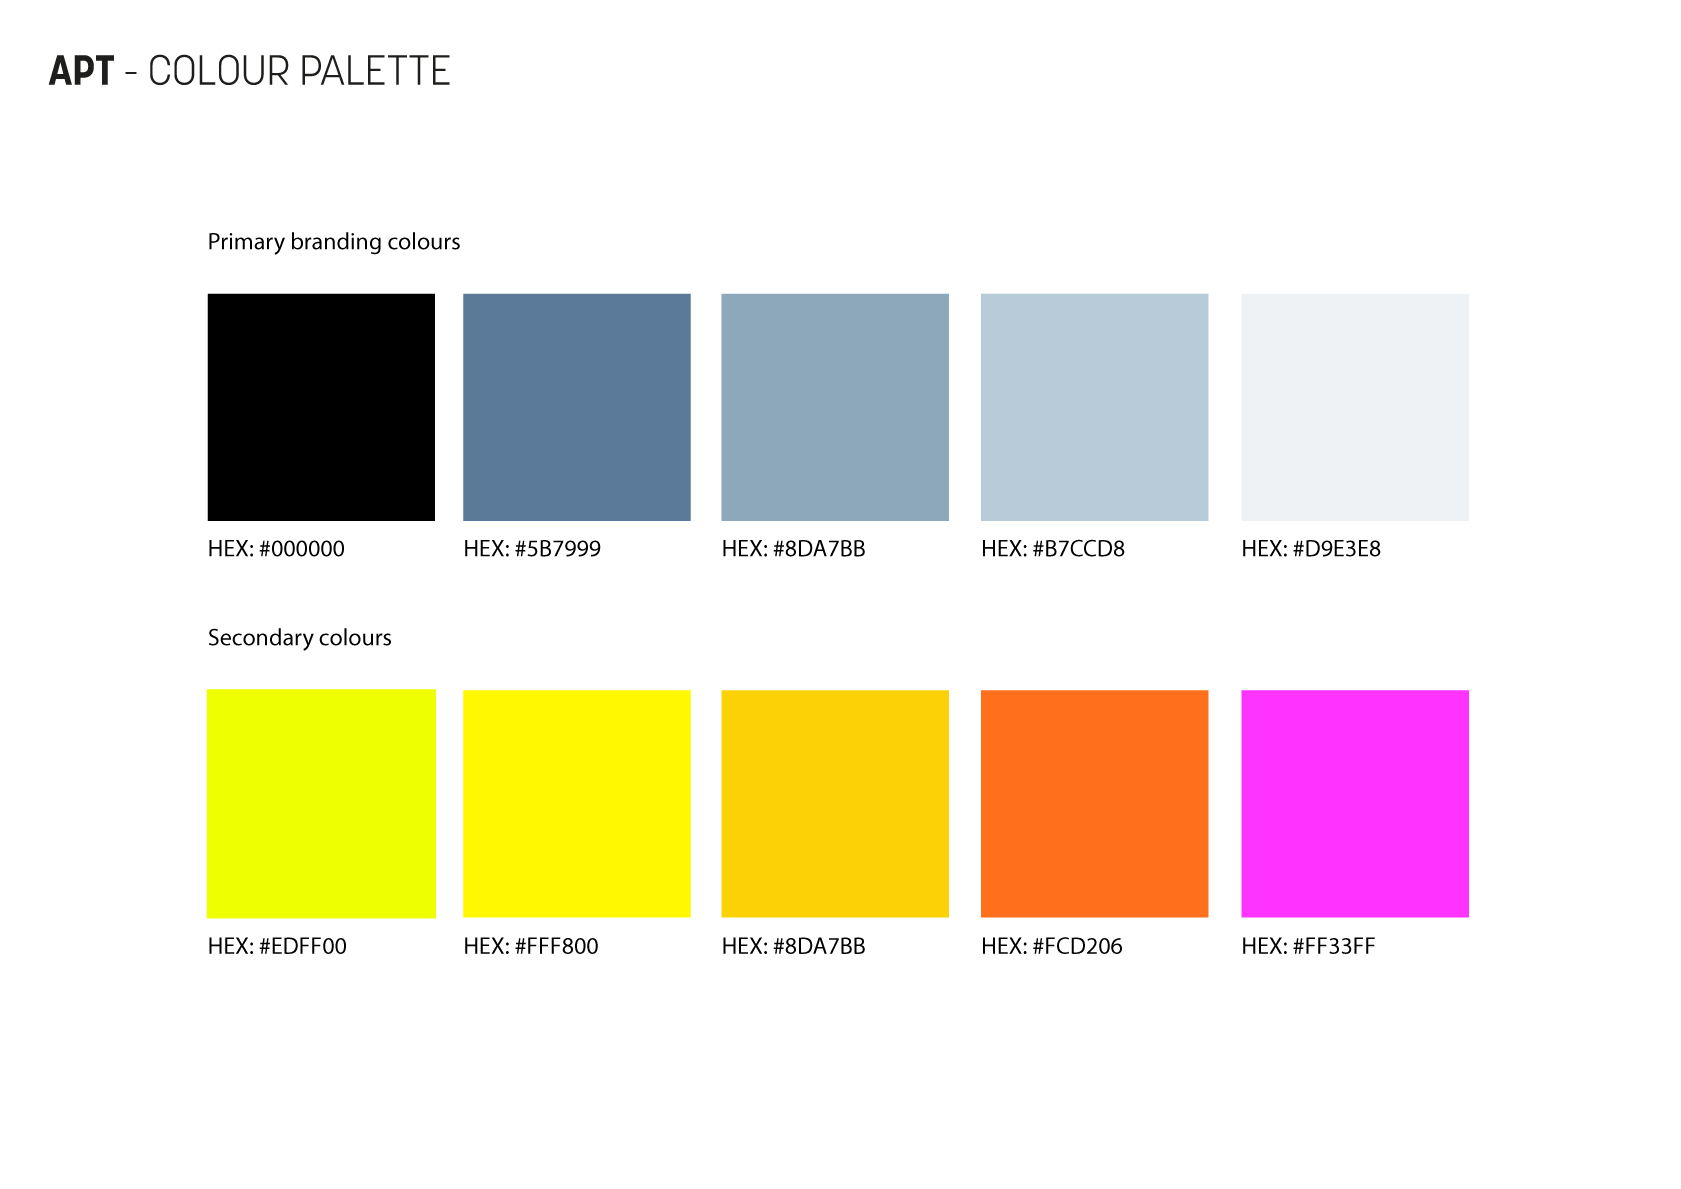 APT-StyleGuide - Colour palette